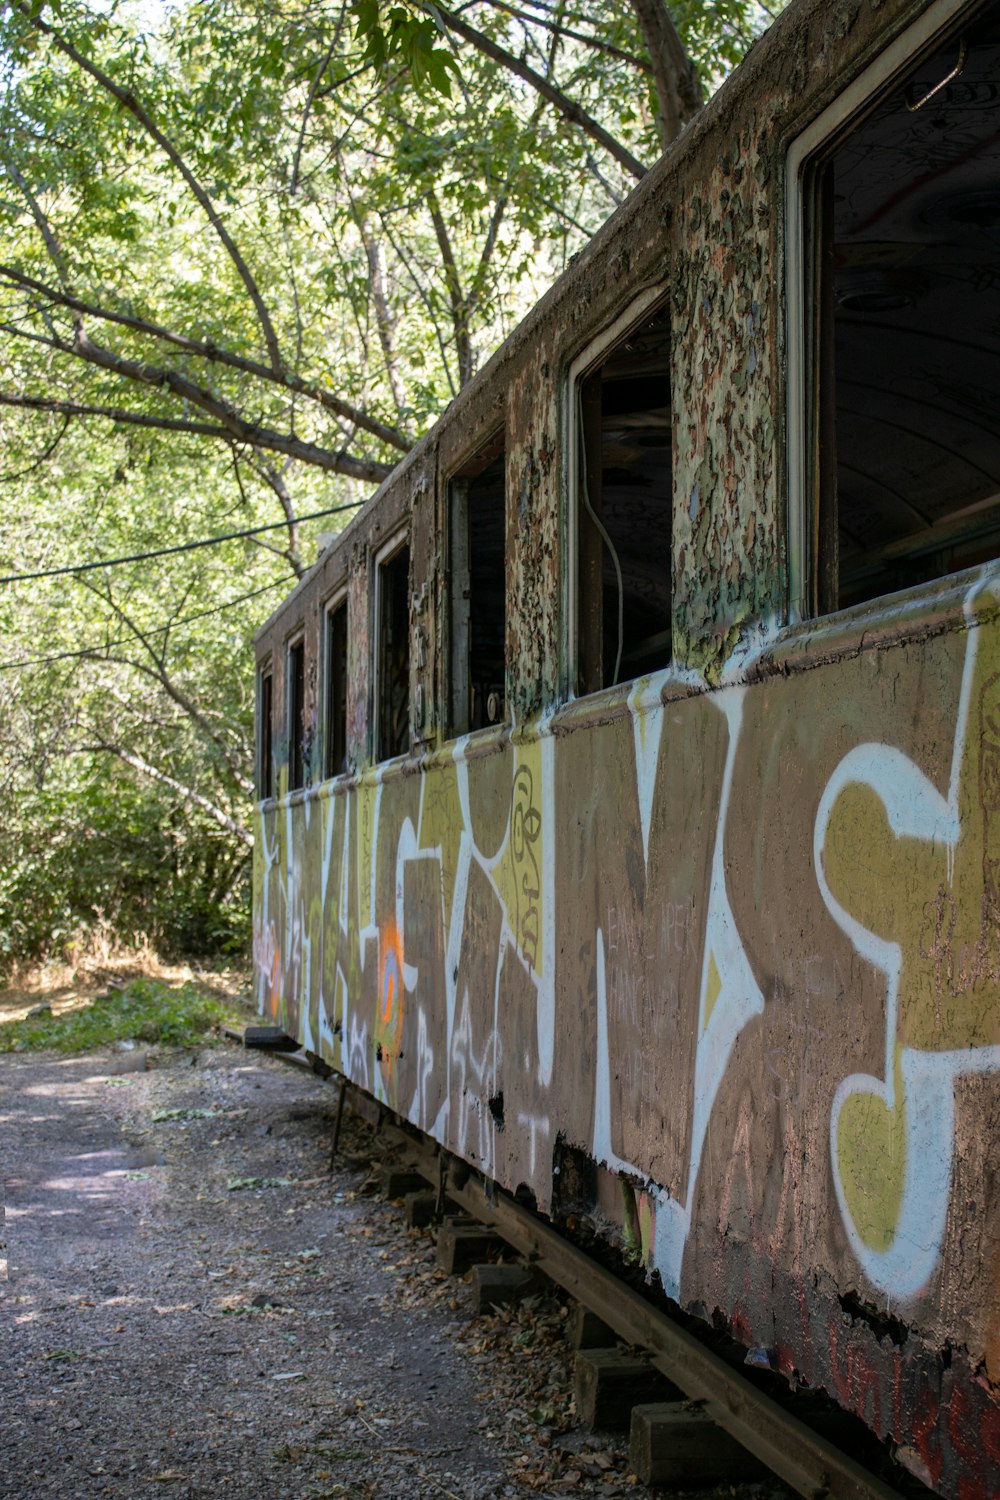 Un train avec des graffitis dessus